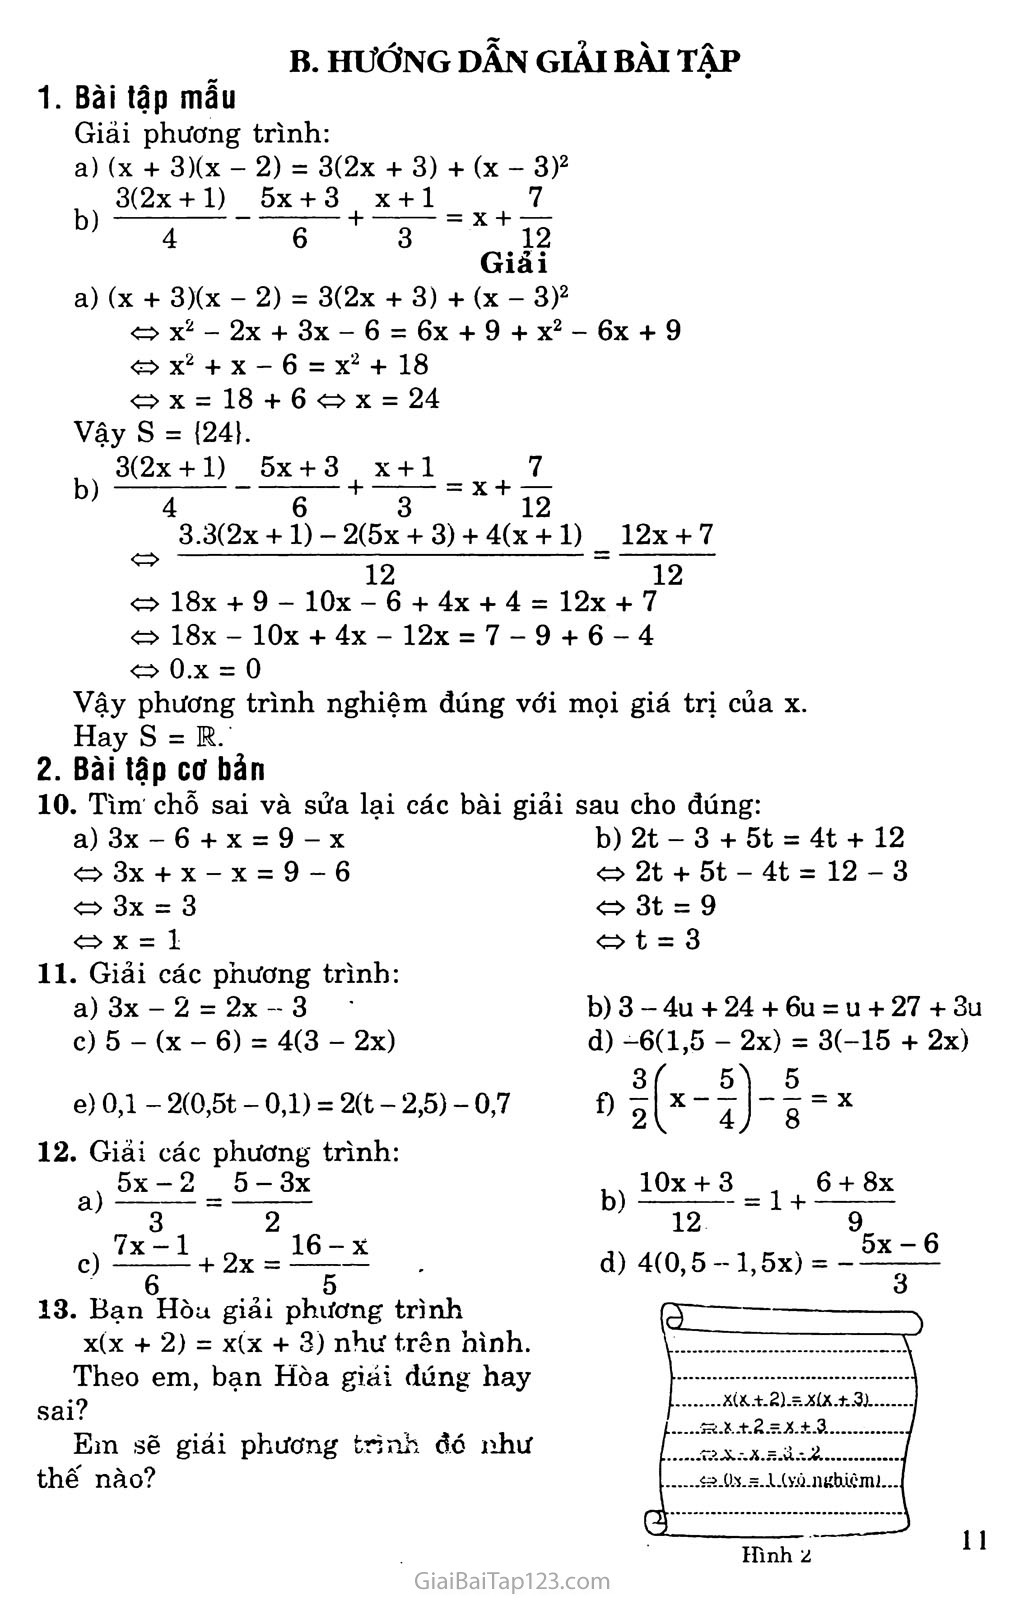 Bài 3. Phương trình đưa về dạng ax + b = 0 trang 2